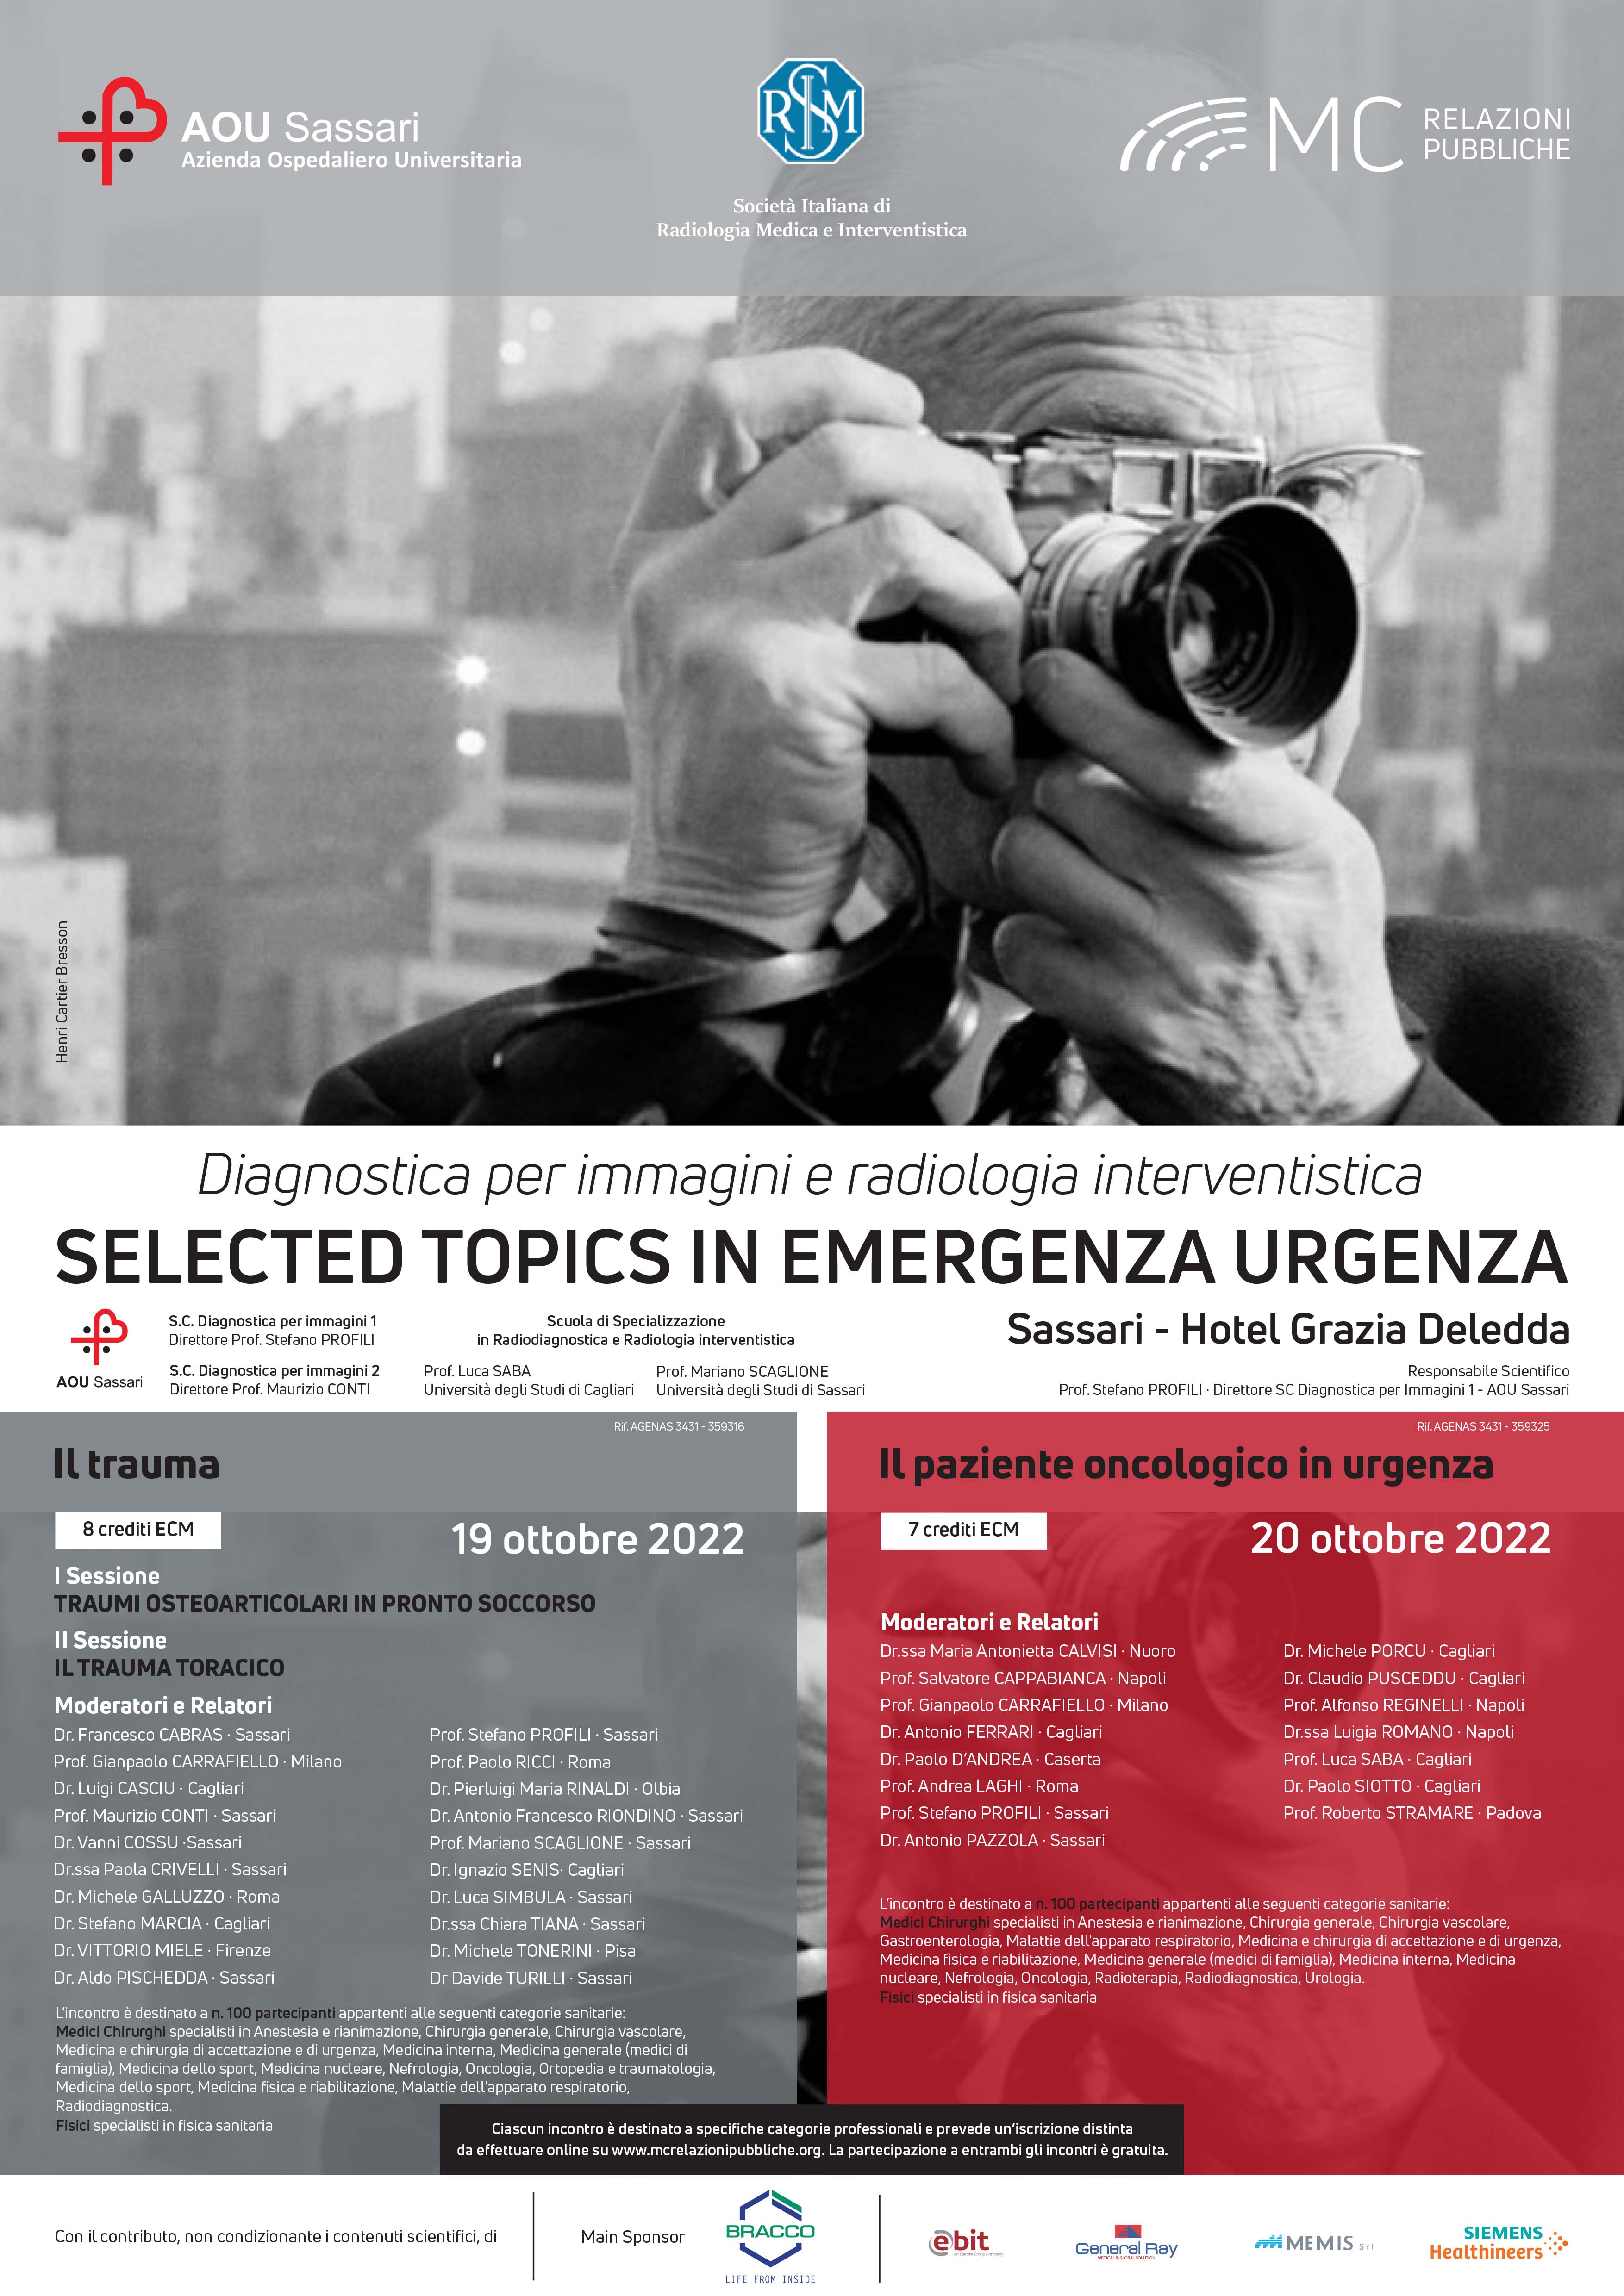 IL TRAUMA. Selected topics in emergenza urgenza -  19 ottobre 2022